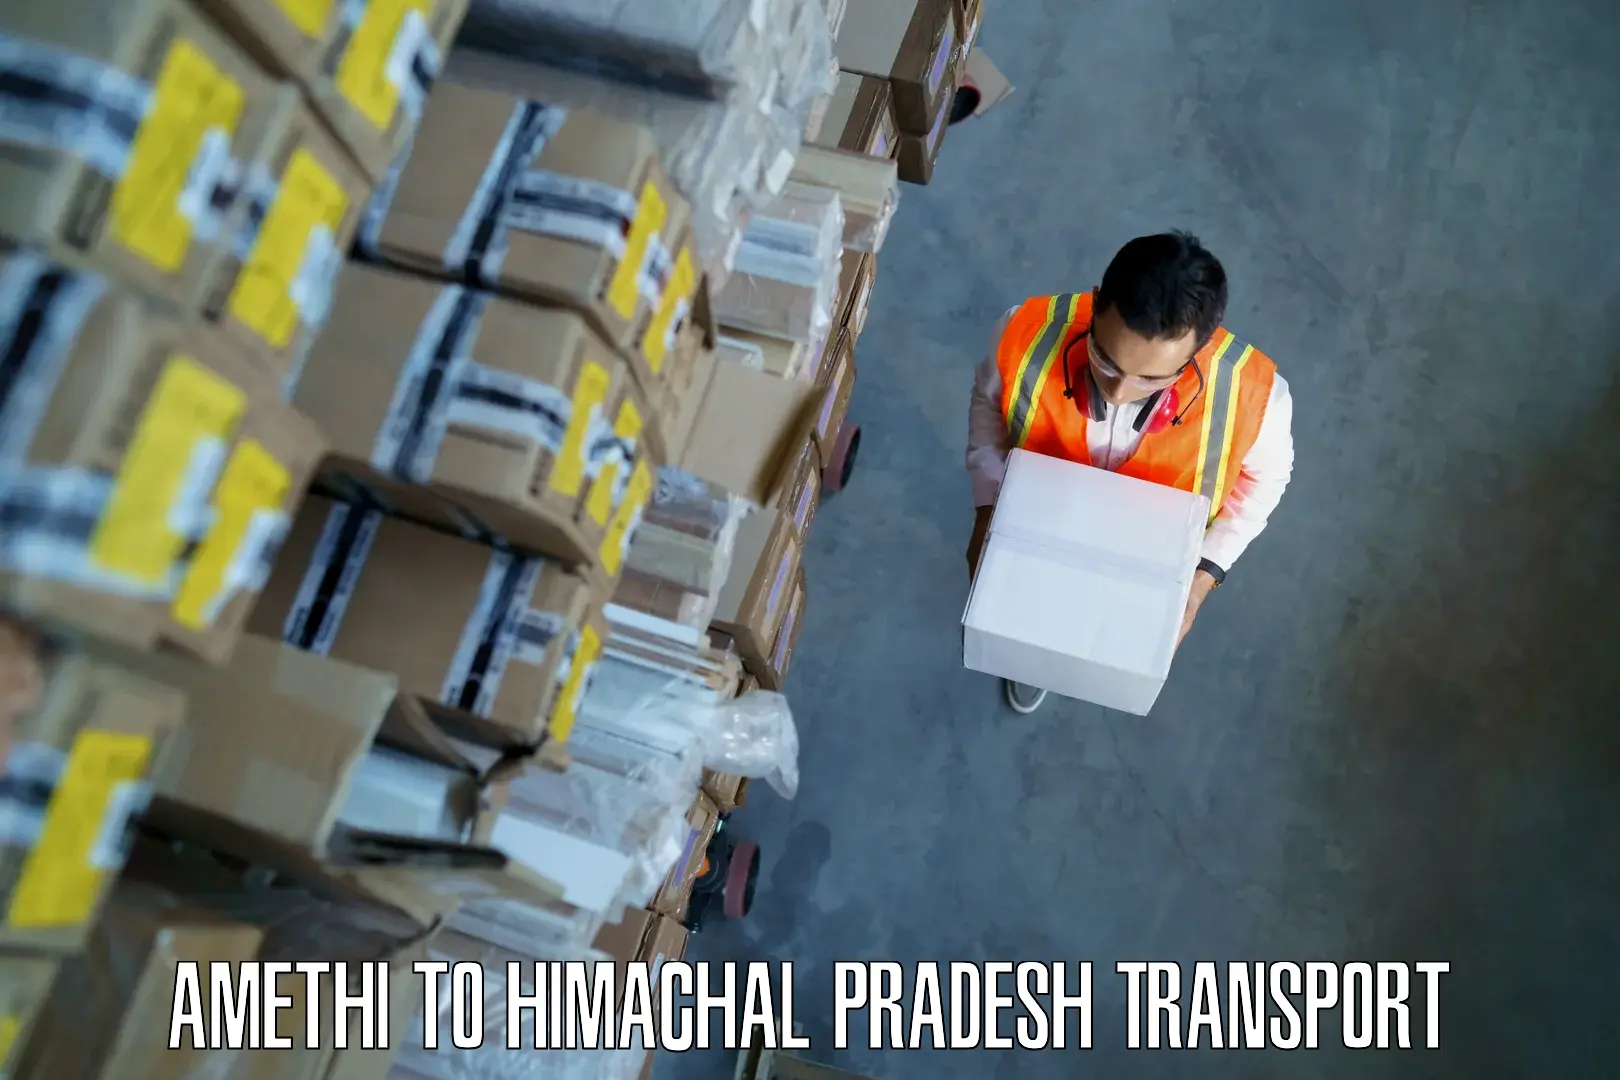 Lorry transport service Amethi to Himachal Pradesh